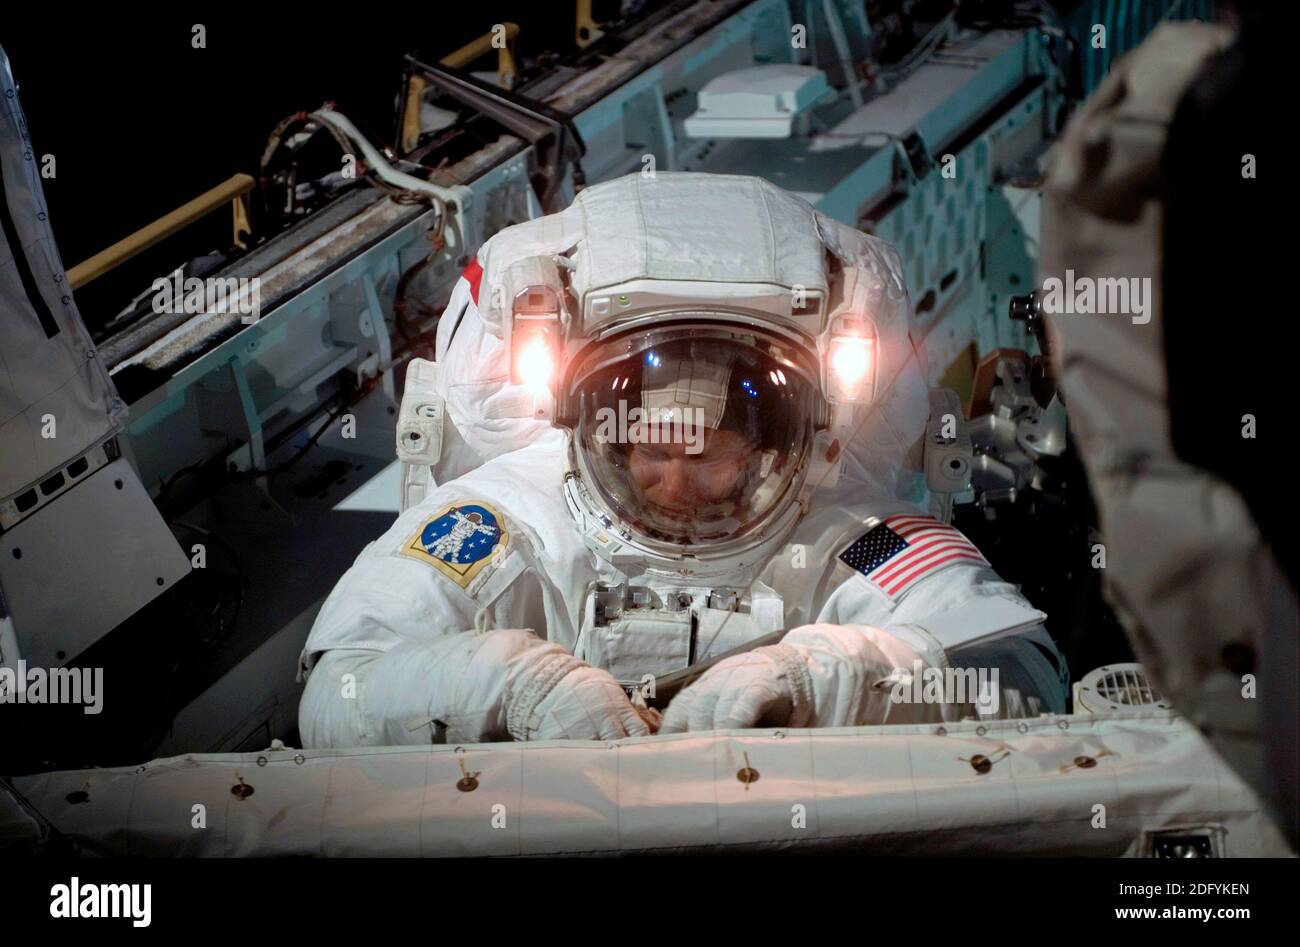 ISS - 08 luglio 2006 - l'astronauta Piers J Sellers, specialista della missione STS-121, lavora su una sezione della Stazione spaziale Internazionale durante la missione Foto Stock